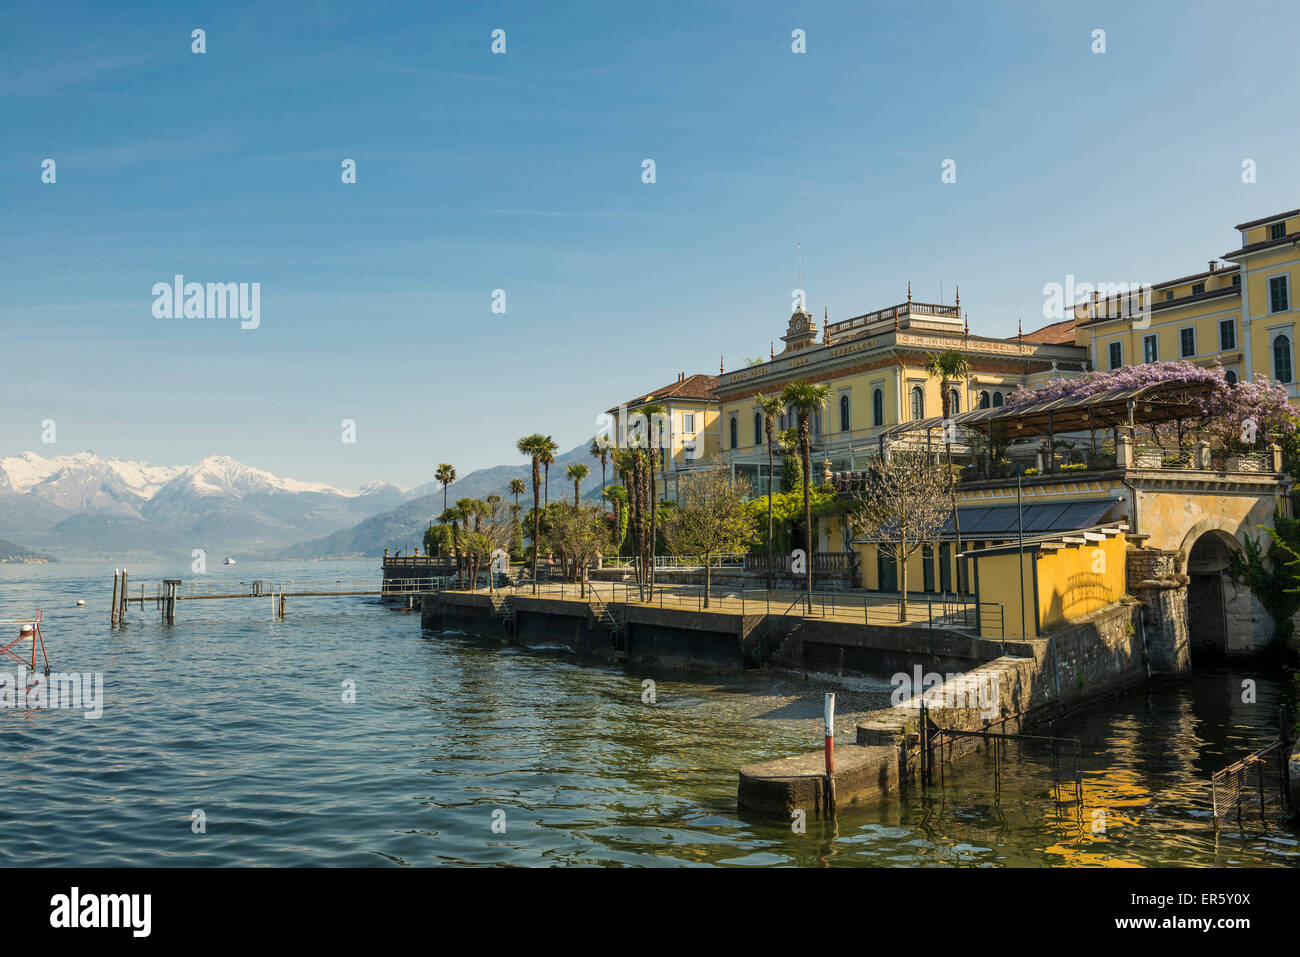 Villa Serbelloni, Bellagio, Lake Como, Lago di Como, Province of Como, Lombardy, Italy Stock Photo